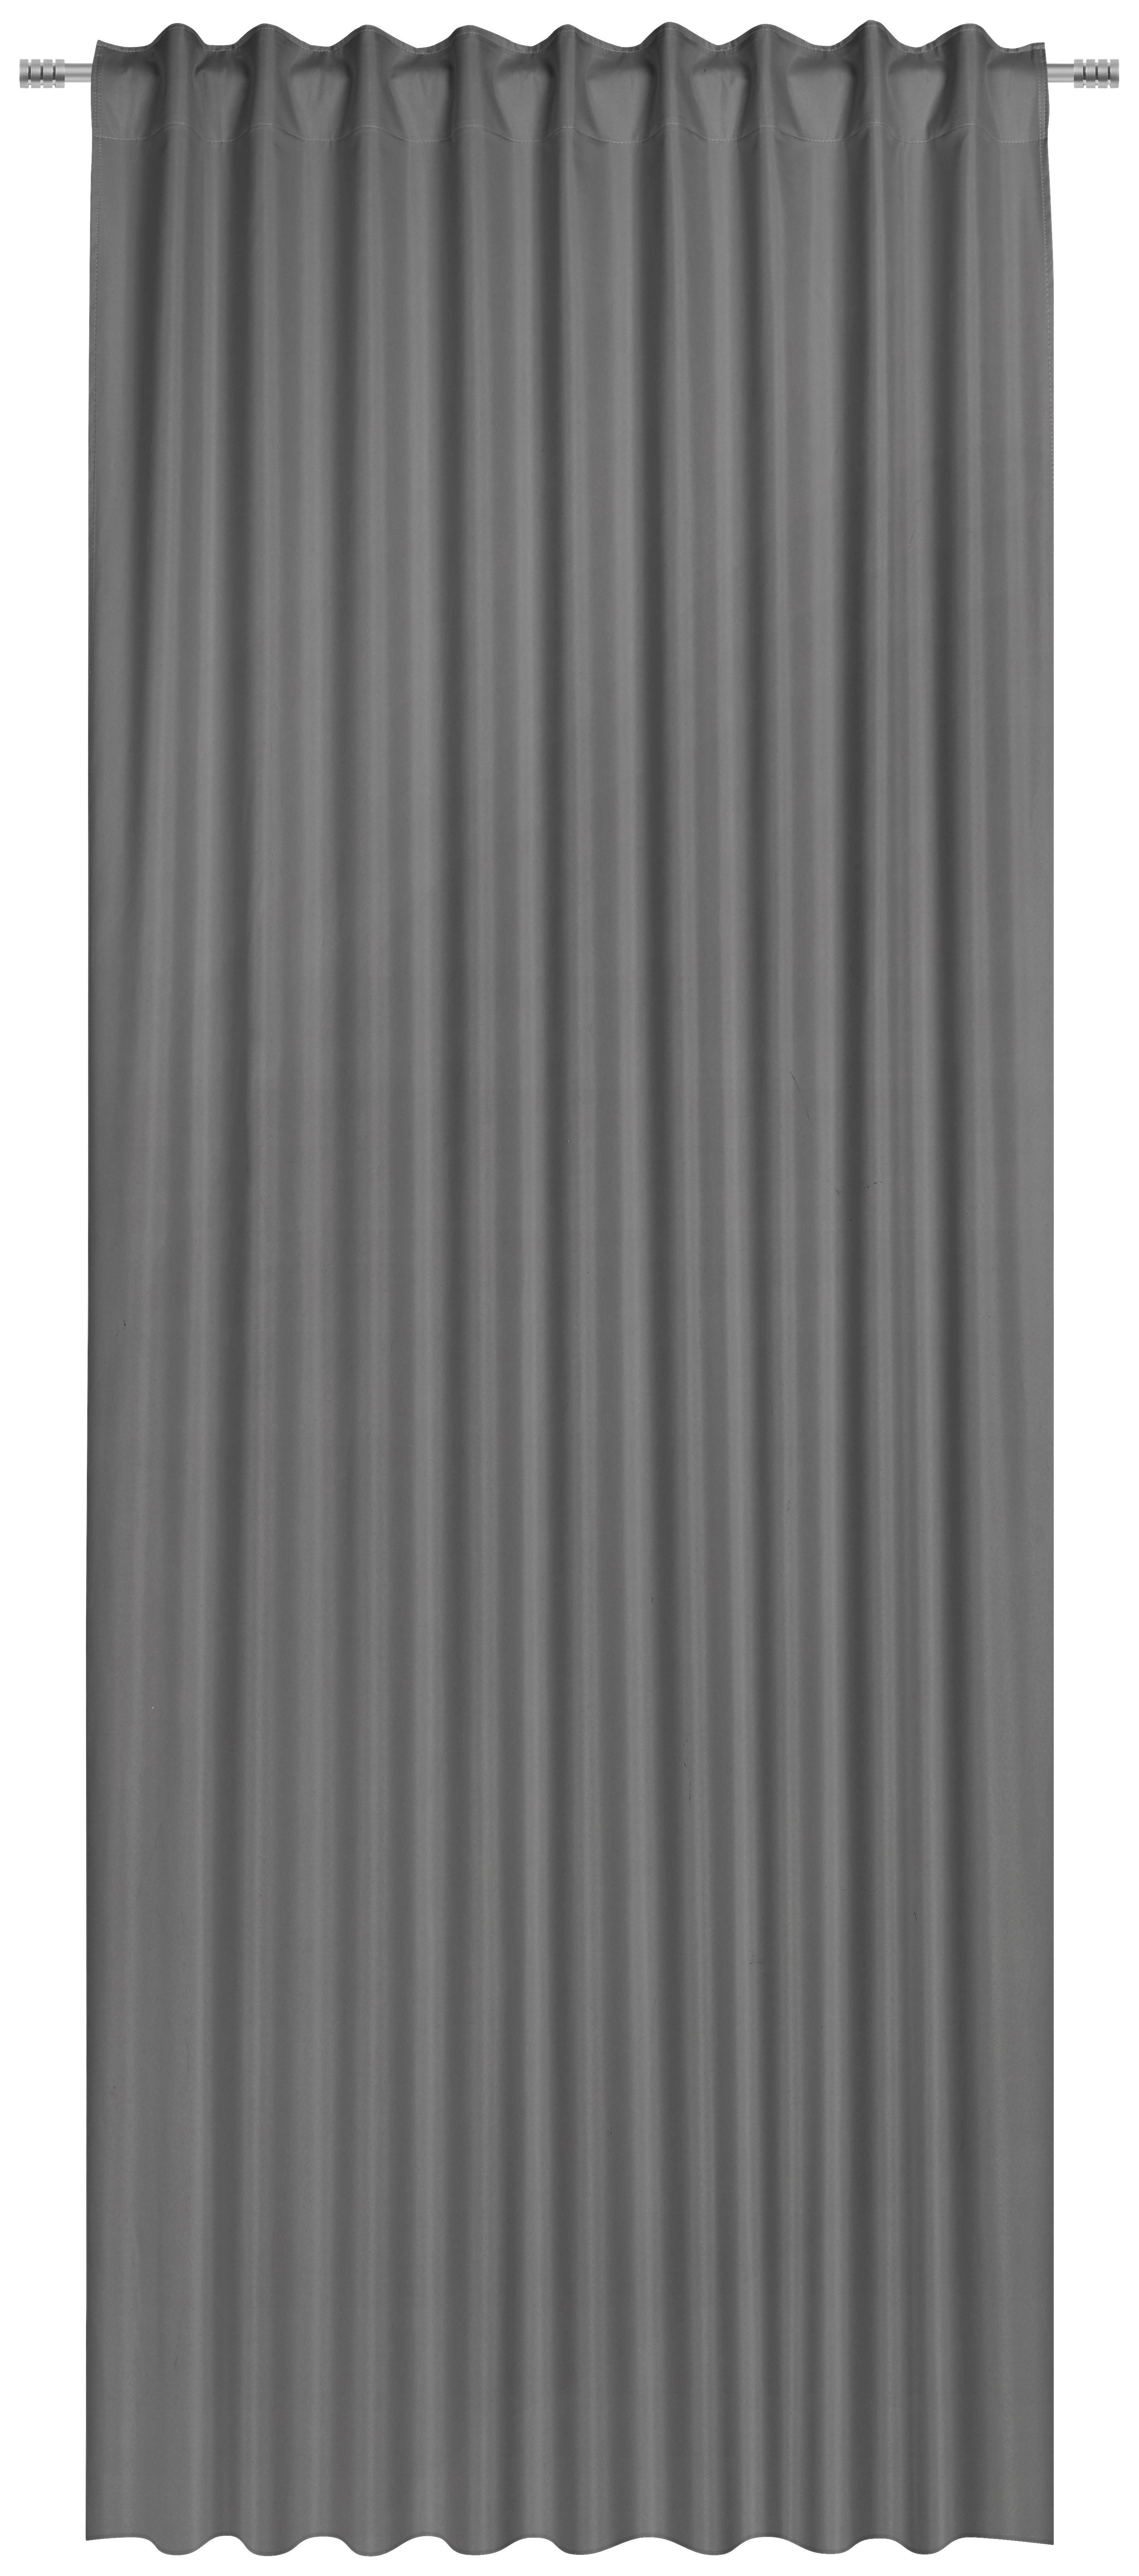 GARDINLÄNGD black-out (mörkläggande)  - grå, Basics, textil (135/300cm) - Esposa